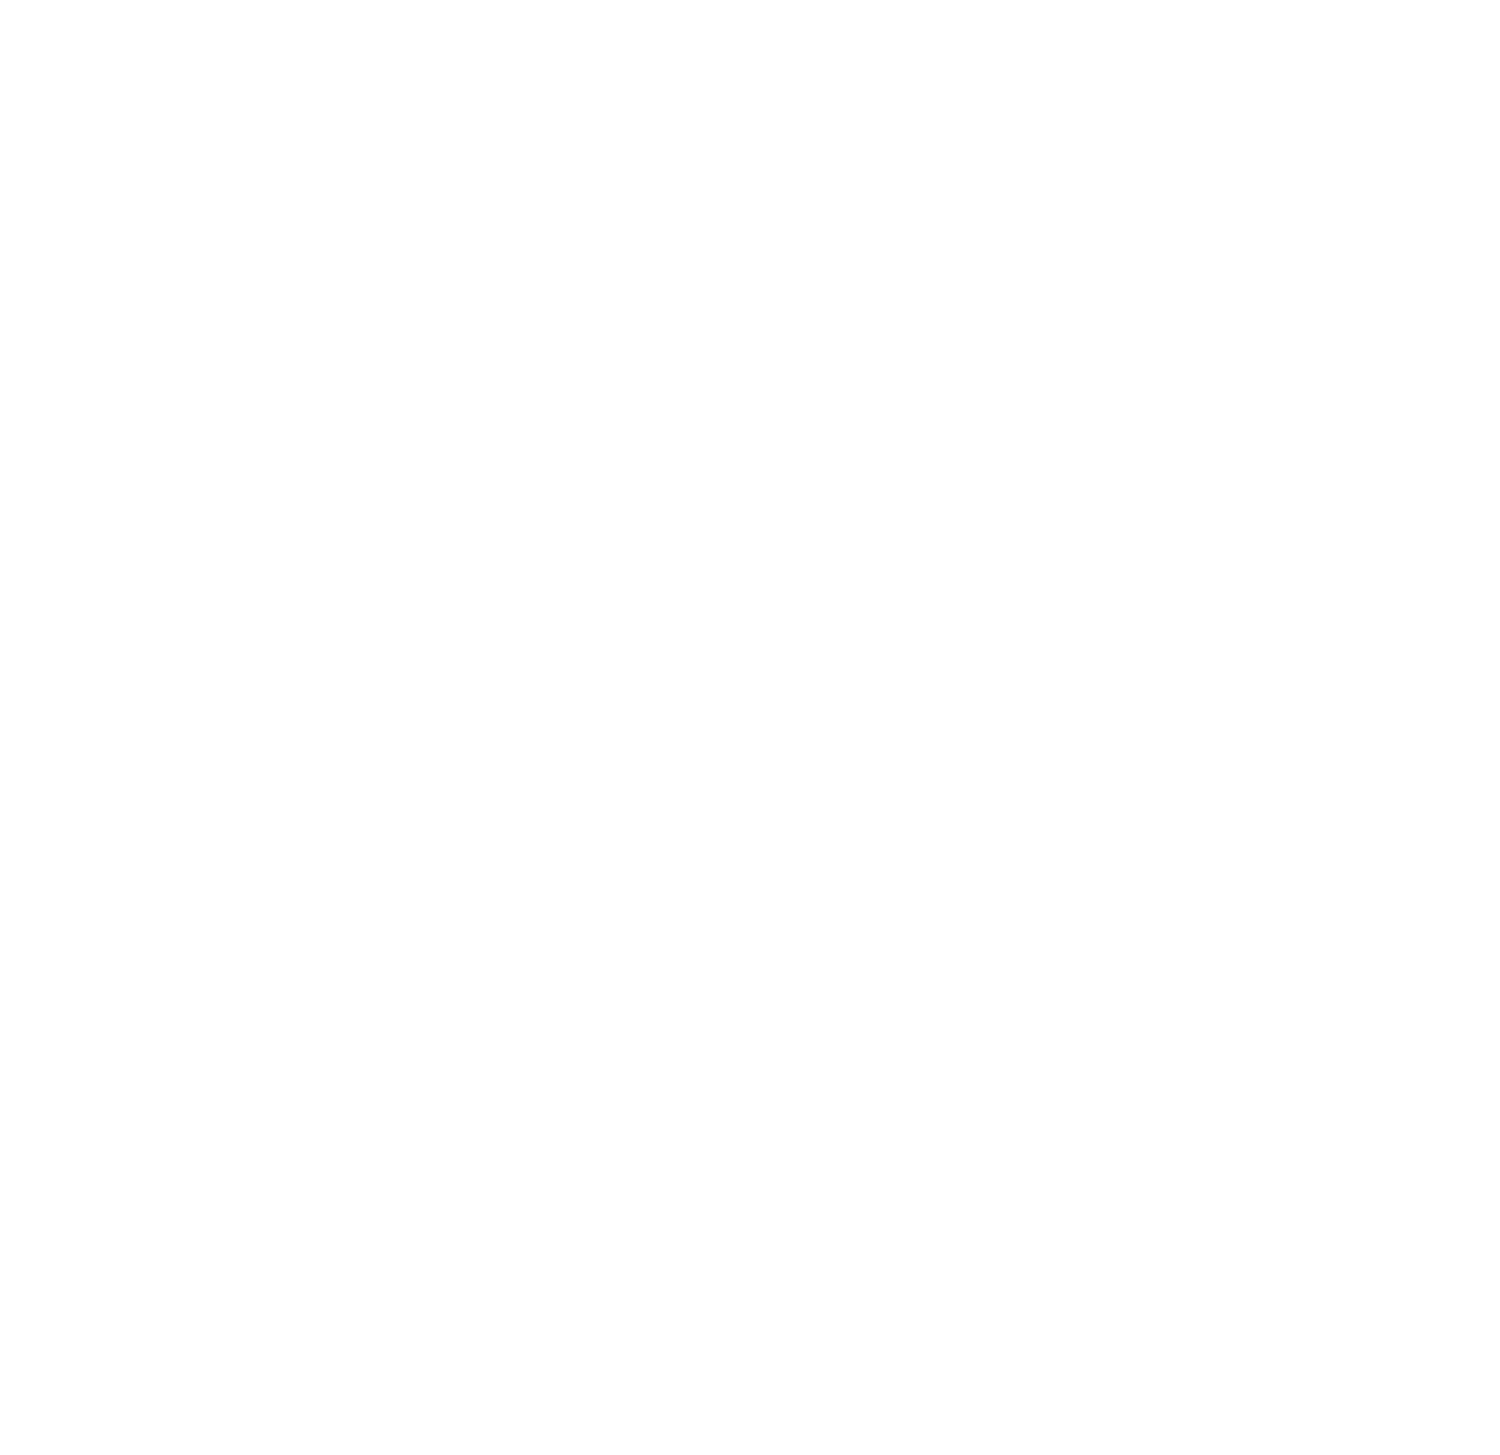 The Rainbow Clinic